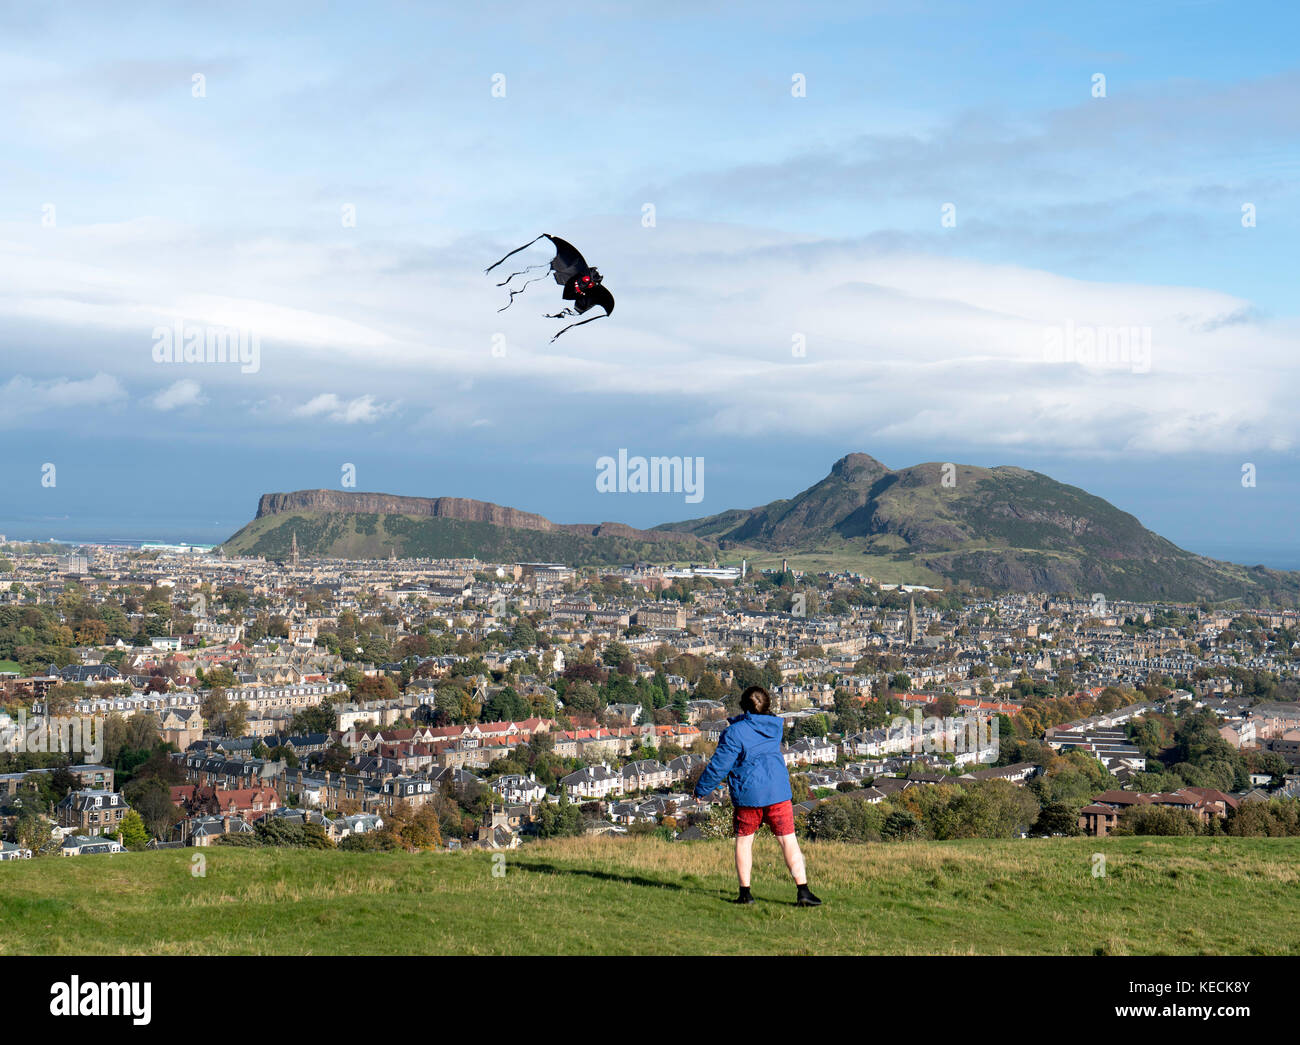 Blick auf den Jungen fliegenden Drachen und die Salisbury Crags und Arthur's Seat Hill mit Blick auf Edinburgh, Schottland, Großbritannien Stockfoto